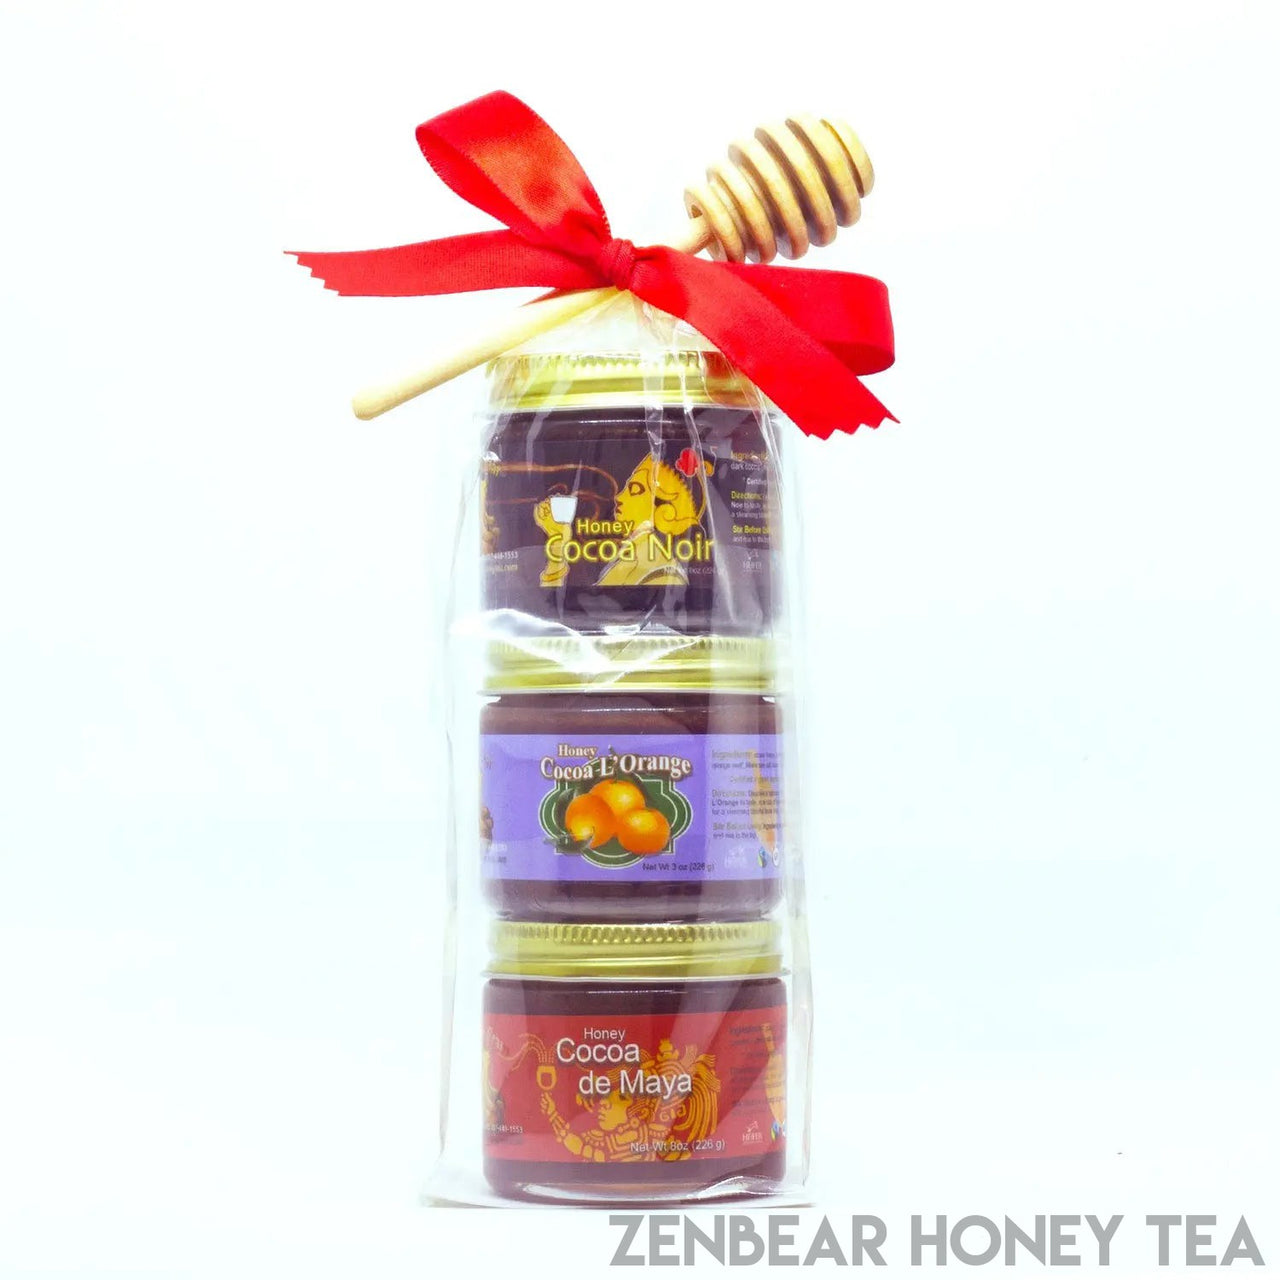 3 Flavor Honey Cocoa Mini Assortment - Zenbear Honey Tea